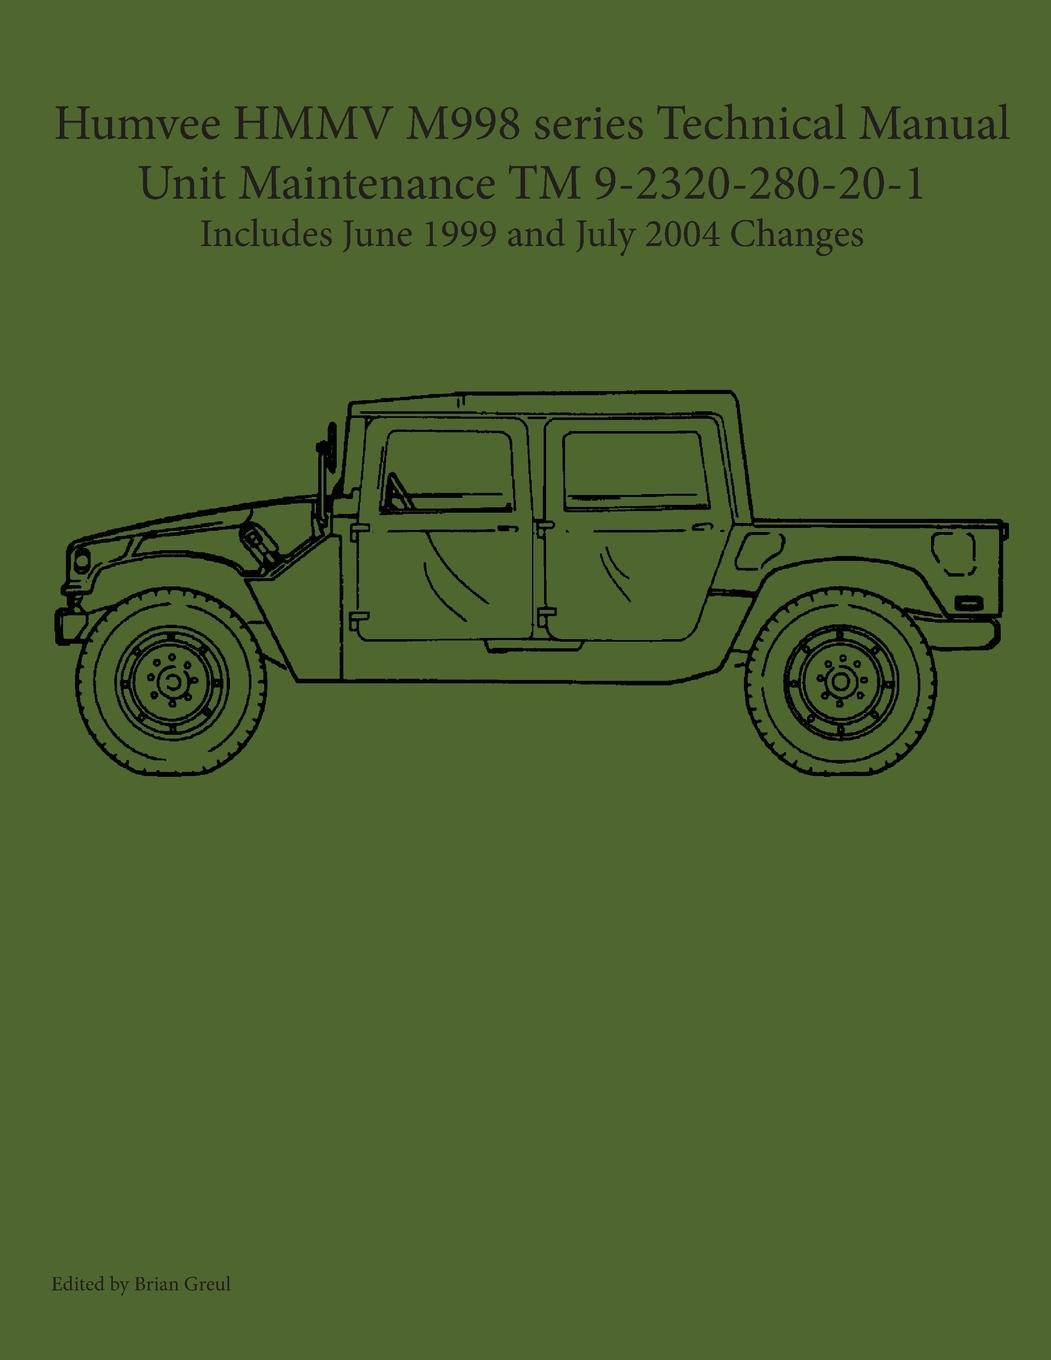 Carte Humvee HMMV M998 series Technical Manual Unit Maintenance TM 9-2320-280-20-1 